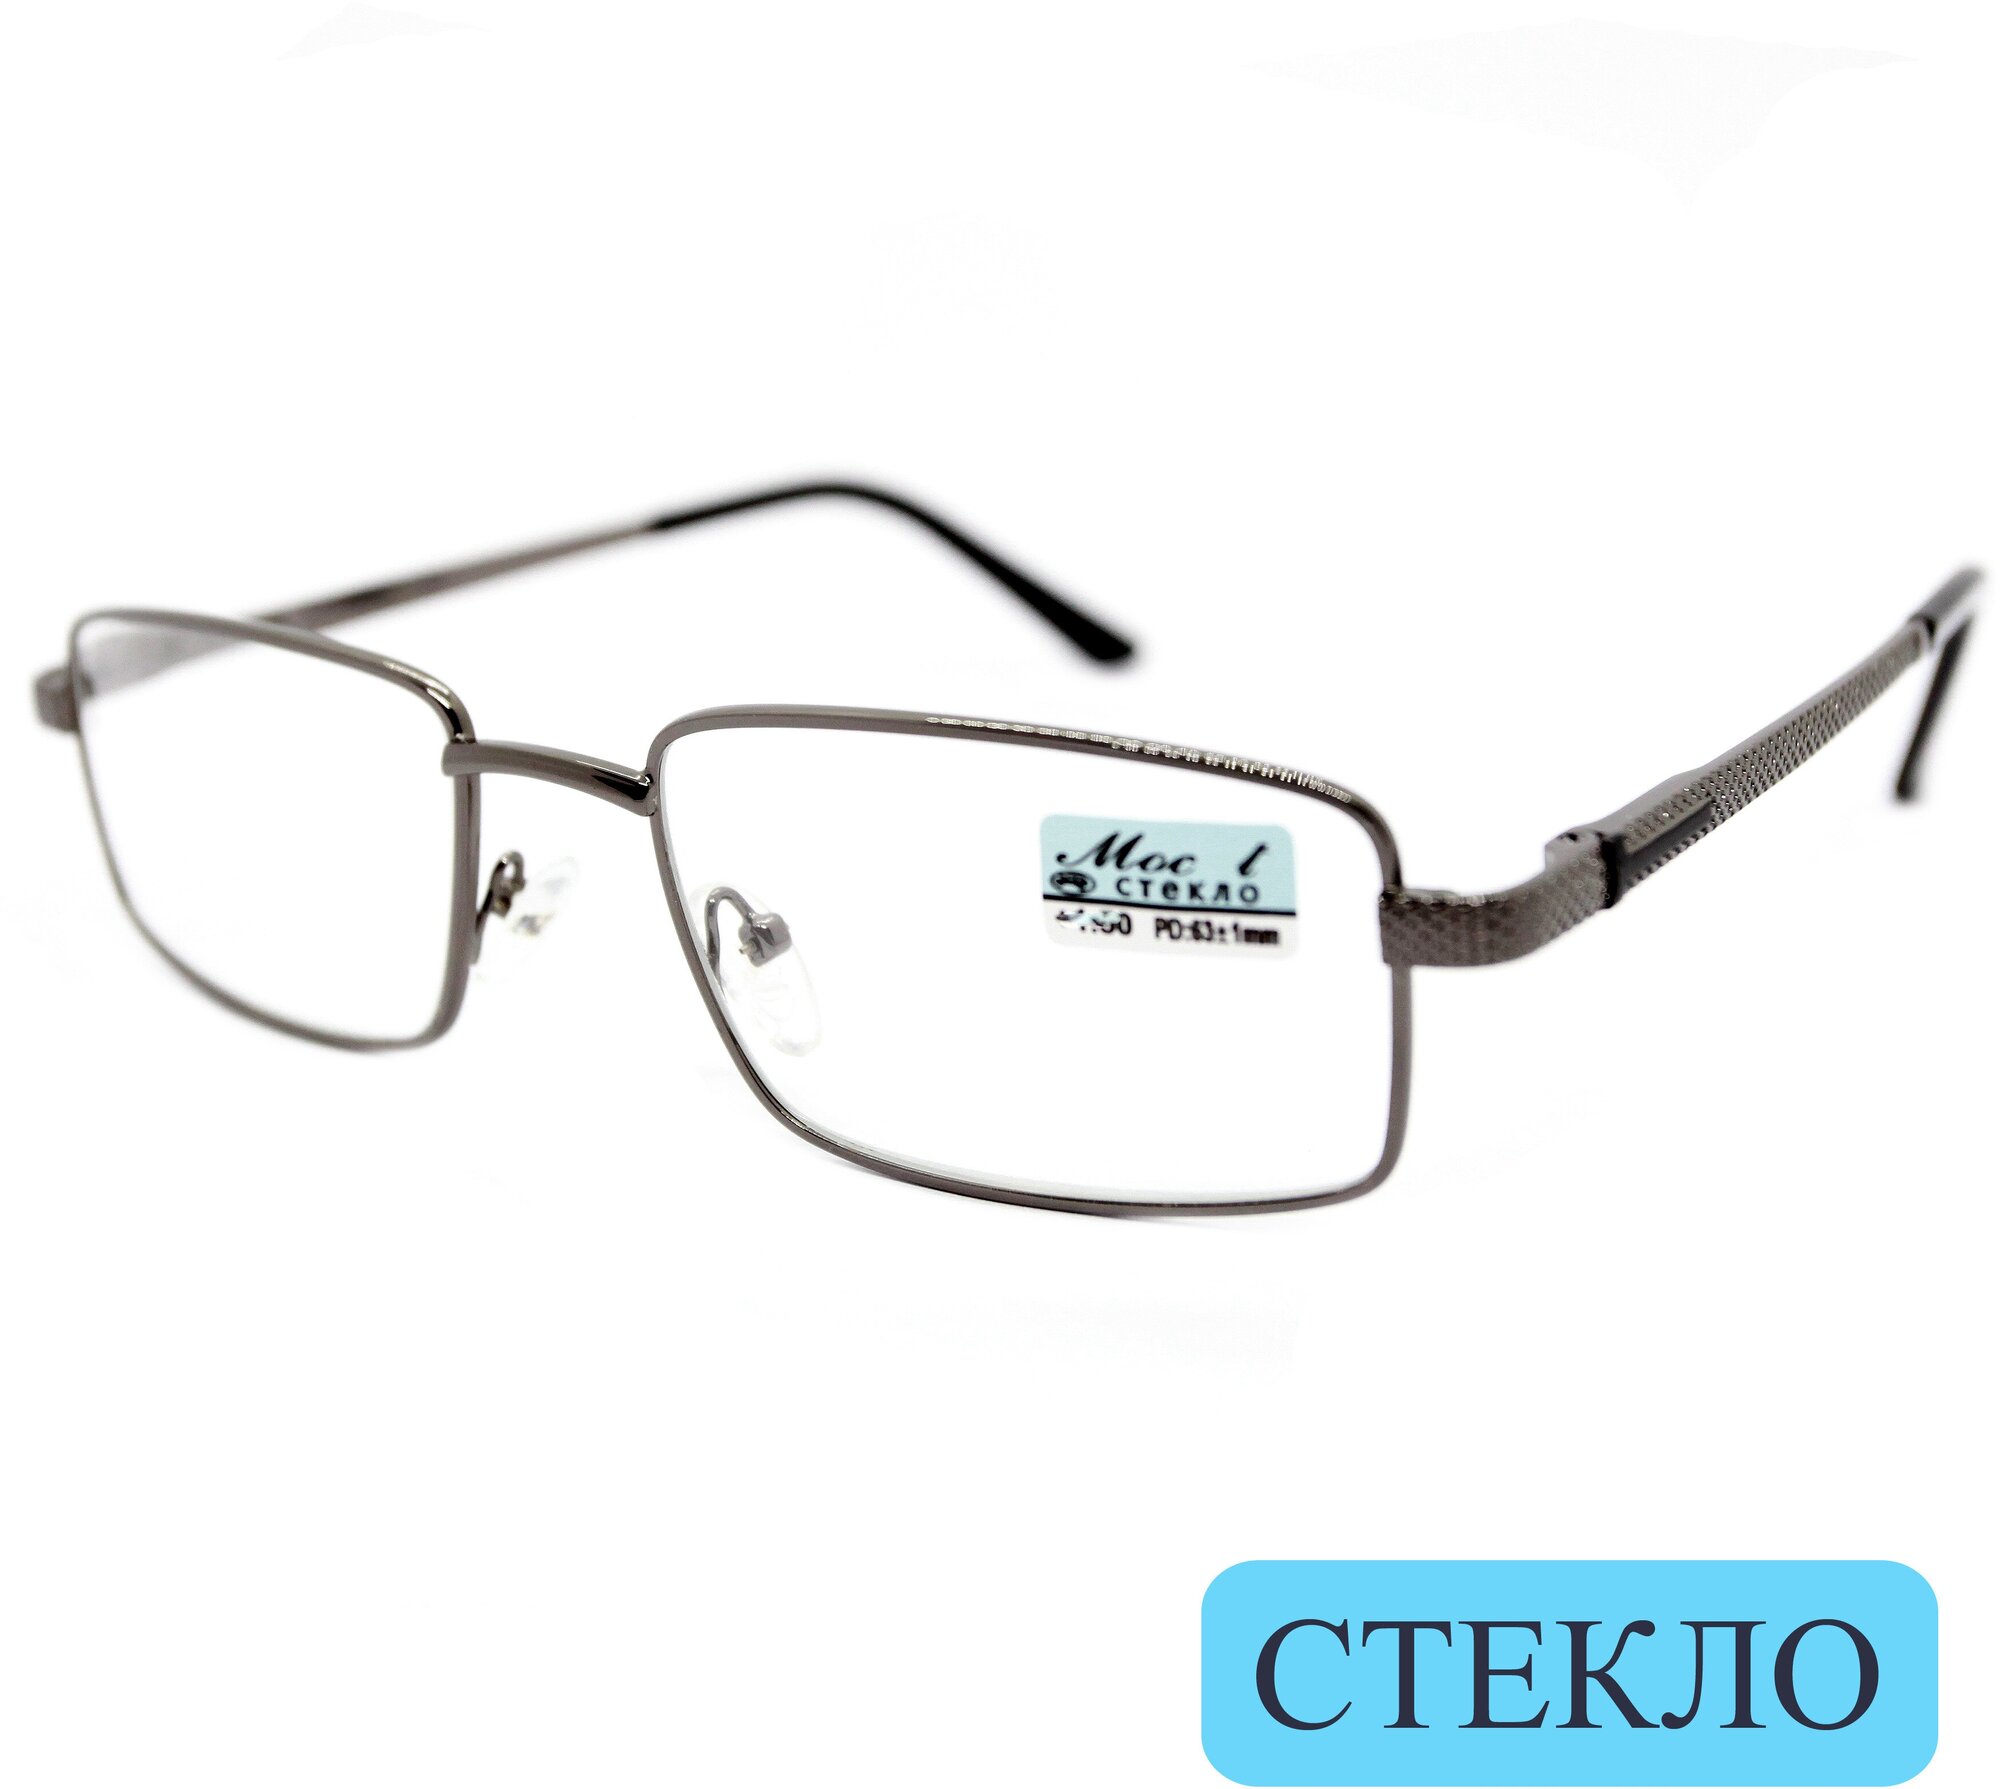 Корригирующие очки для чтения (+3.25) мост 129 M2 линза стекло без футляра цвет серый РЦ 62-64